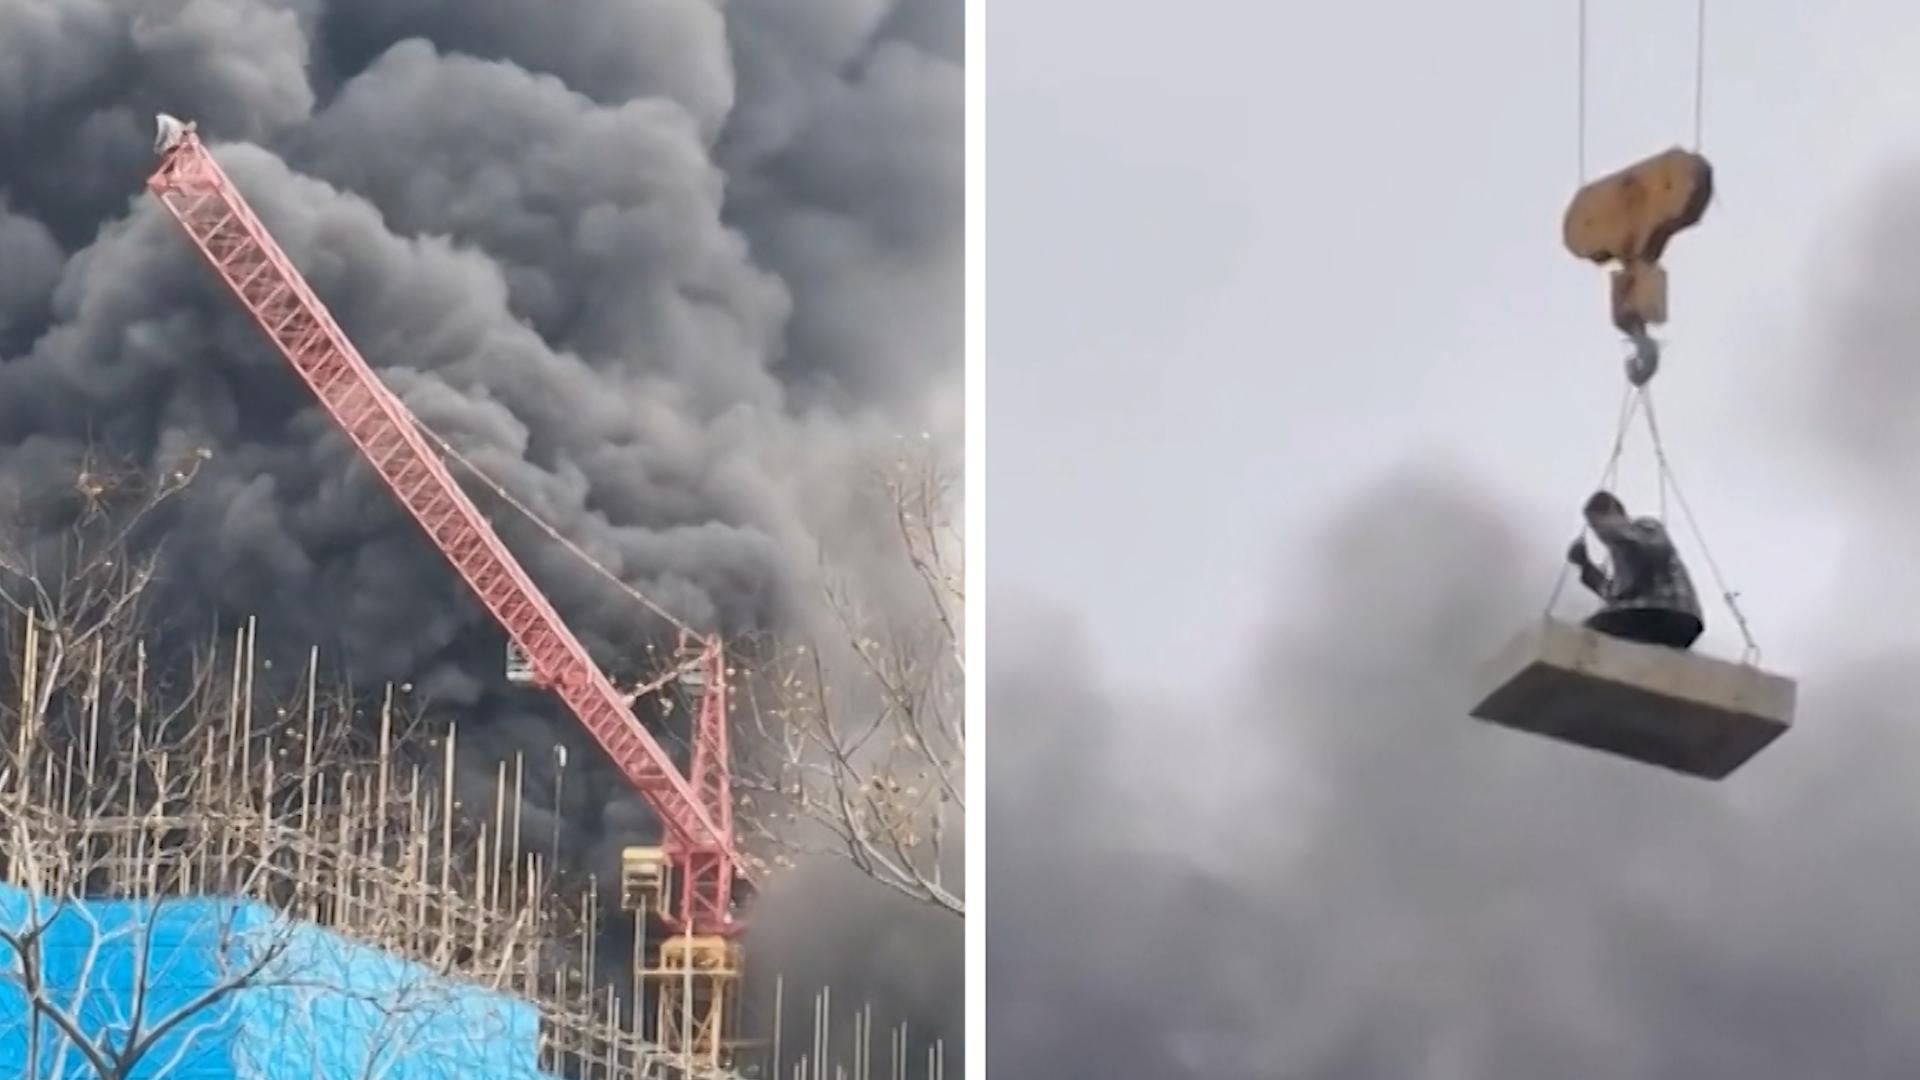 Auf Ausleger gefangen: Kranfahrer rettet Arbeiter mit Platte Baustelle nach Brand in Rauch gehüllt